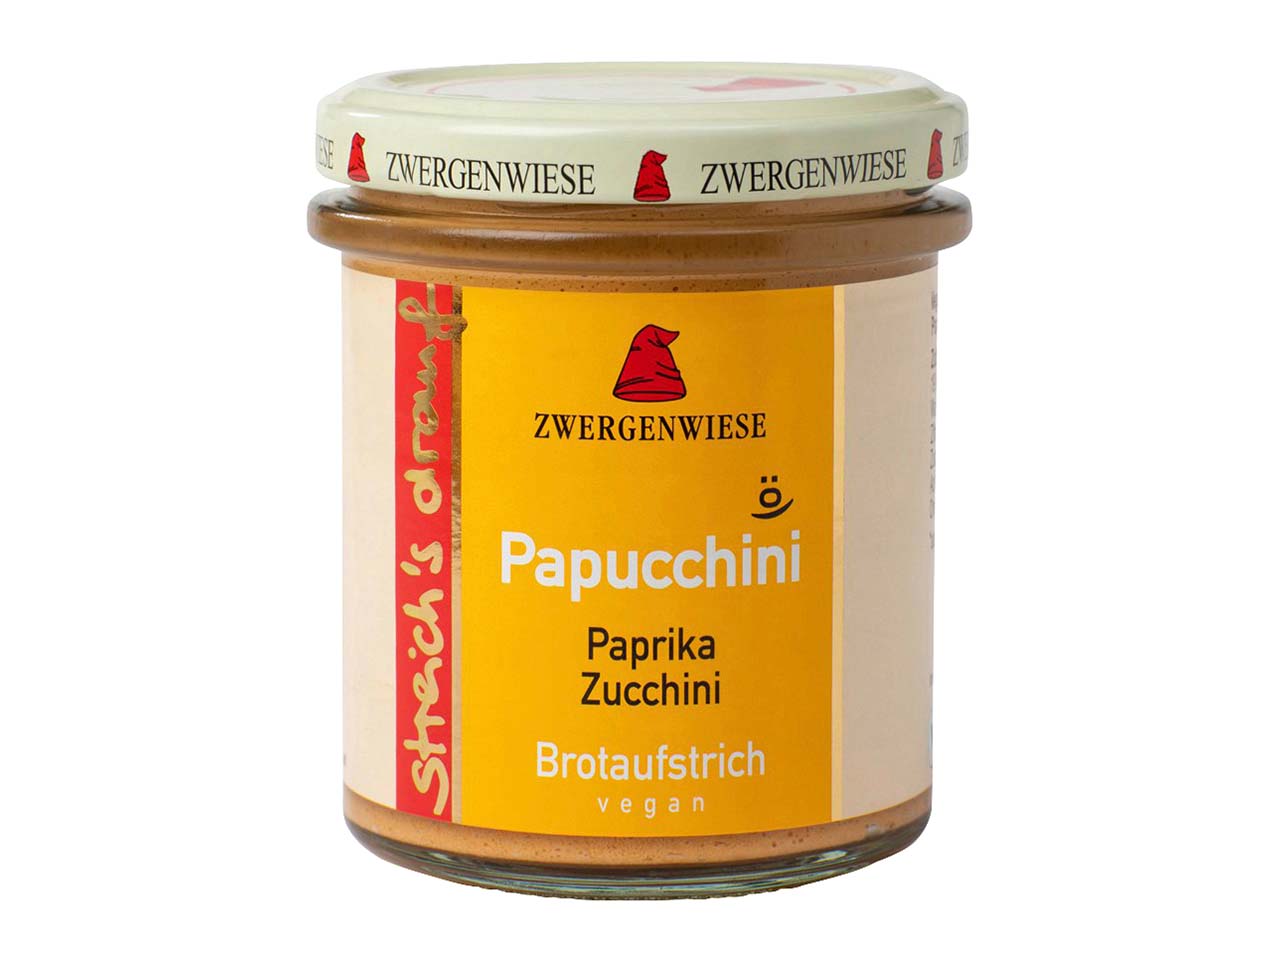 Zwergenwiese streich's drauf Papucchini "Paprika und Zucchini" vegan